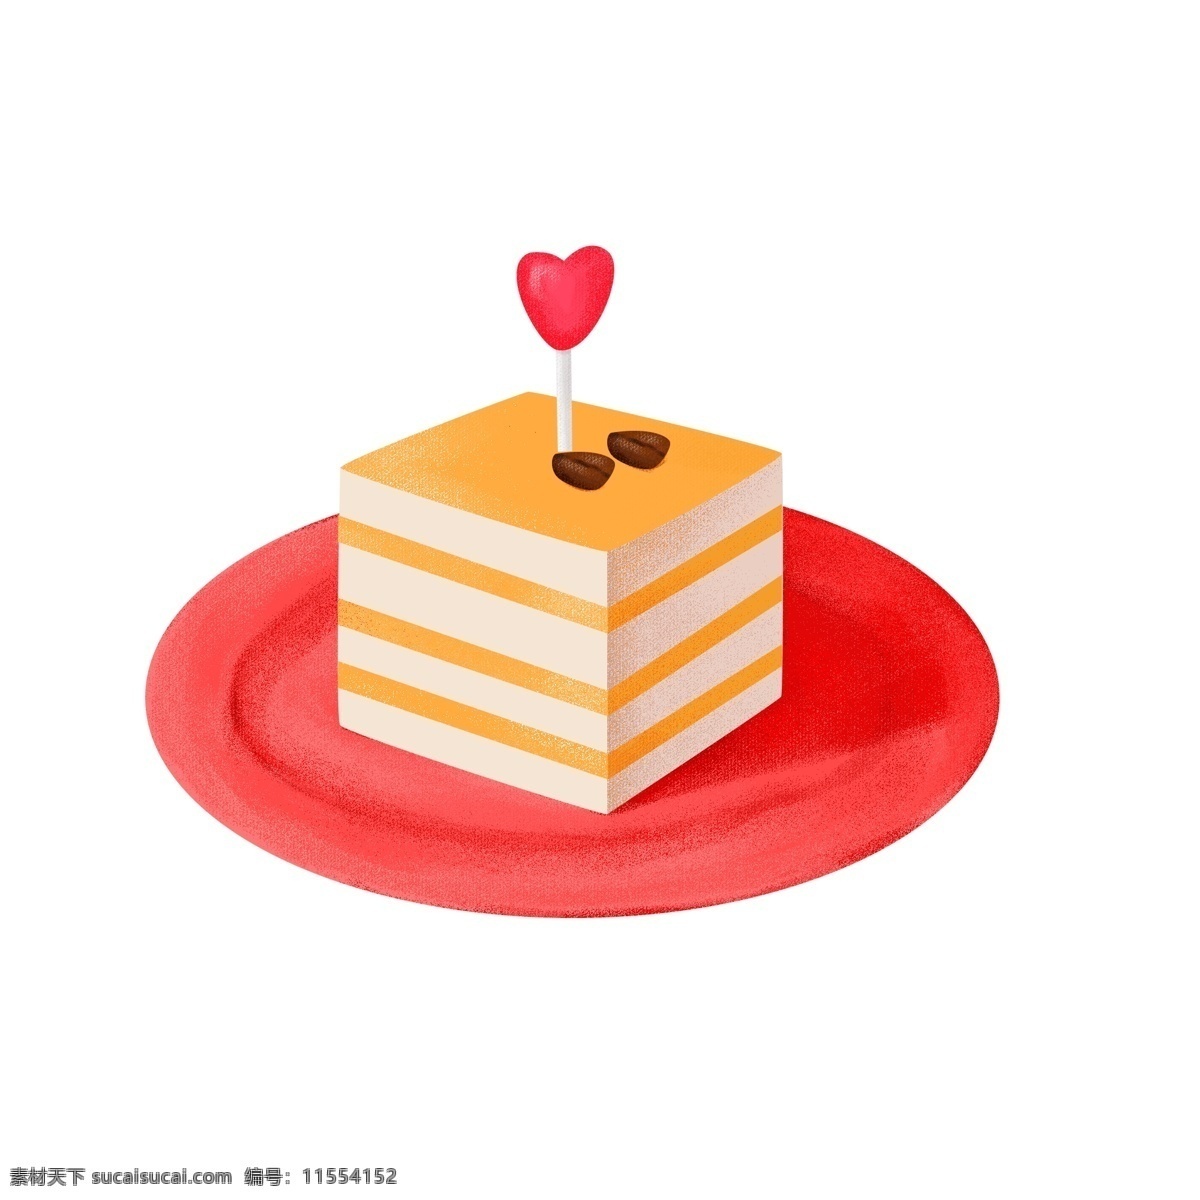 卡通 情人节 蛋糕 插画 卡通生日蛋糕 卡通蛋糕 生日海报 生日贺卡 蛋糕设计 儿童生日蛋糕 手绘生日蛋糕 杯子蛋糕 节日蛋糕 情人节蛋糕